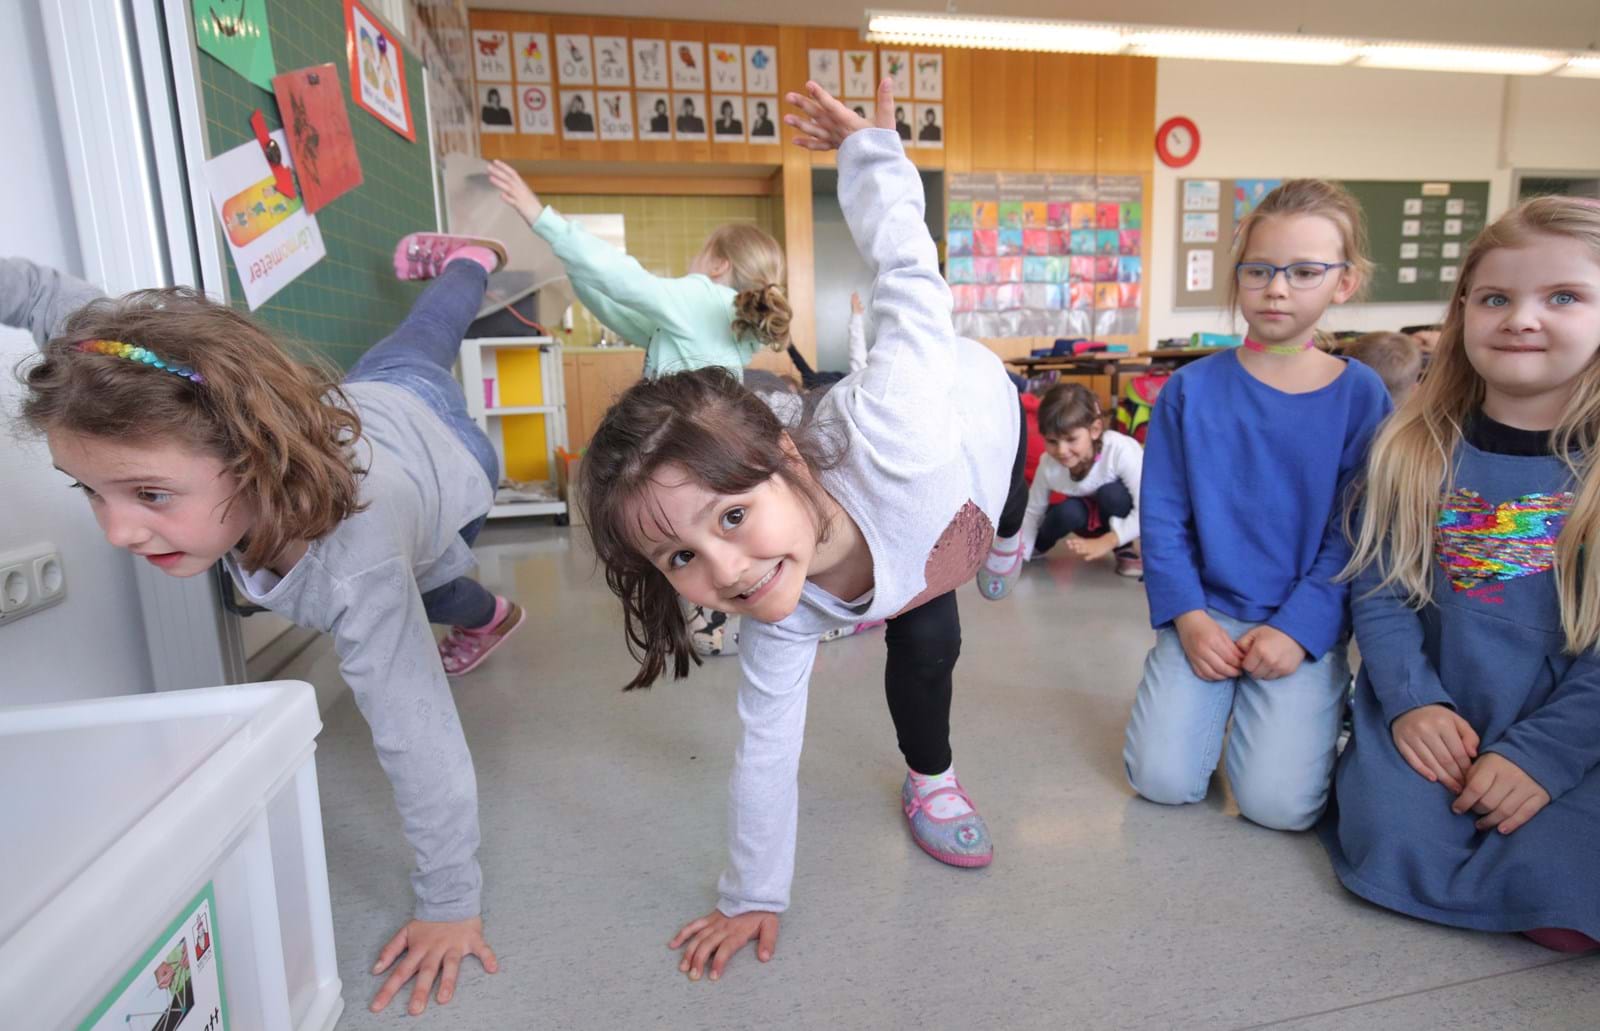 Die Schüler der Grundschule Gablingen freuen sich über die abwechslungsreichen Übungen zwischen den Lernblöcken. Ihre Lehrerin Christina Egger nutzt das Konzept der 3malE-Bewegungspausen von Anfang an.